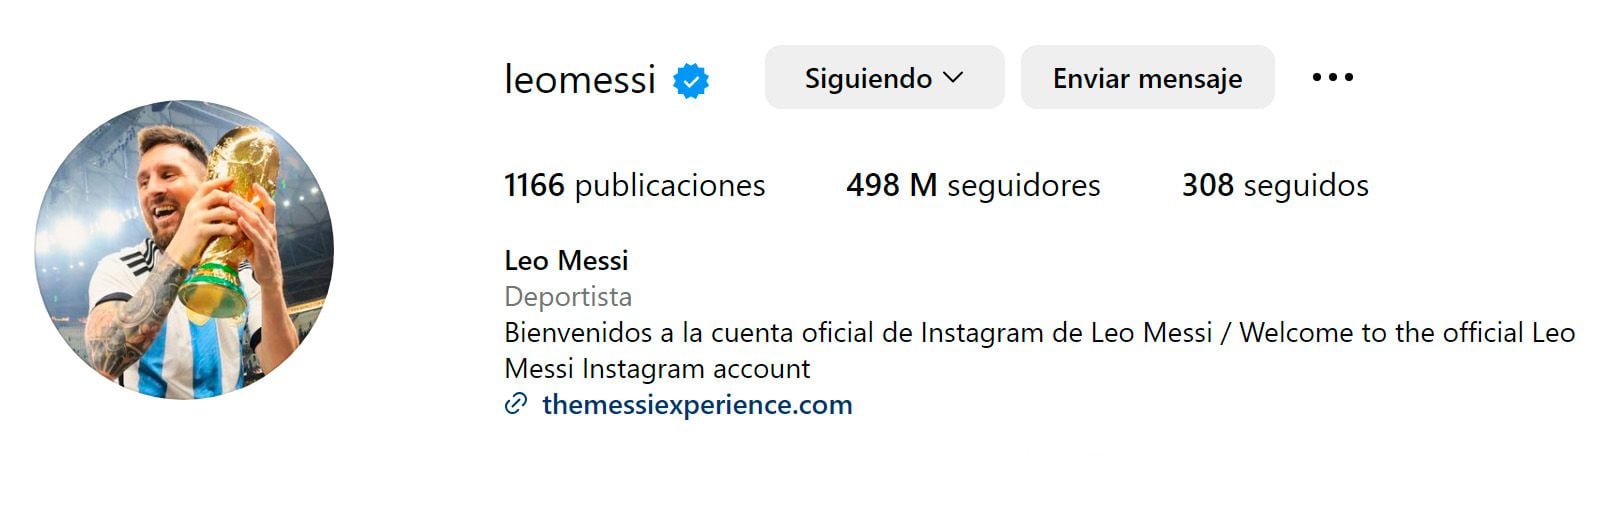 La nueva foto que eligió Lionel Messi en su Instagram